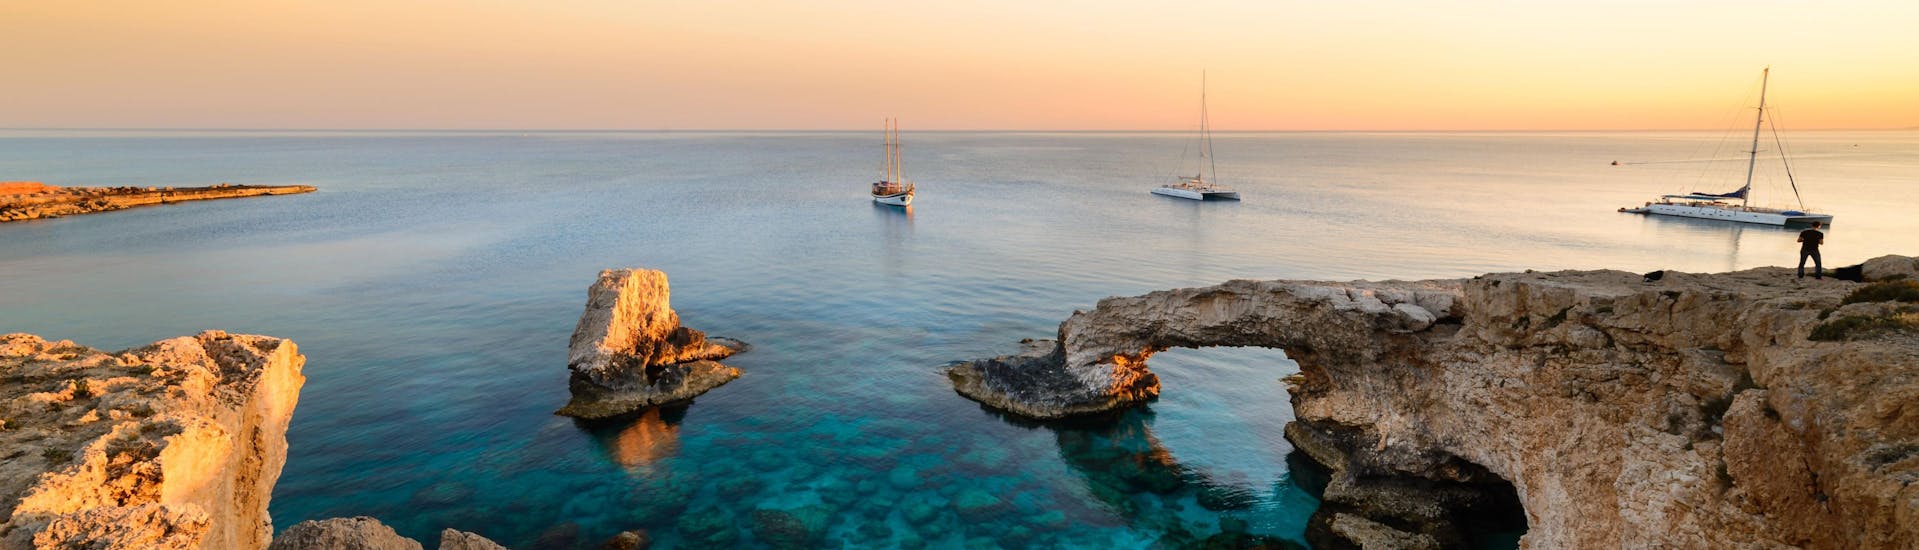 Blick auf die Blaue Lagune in der Nähe von Kap Greco, einem fantastischen Ziel für Bootstouren auf Zypern.